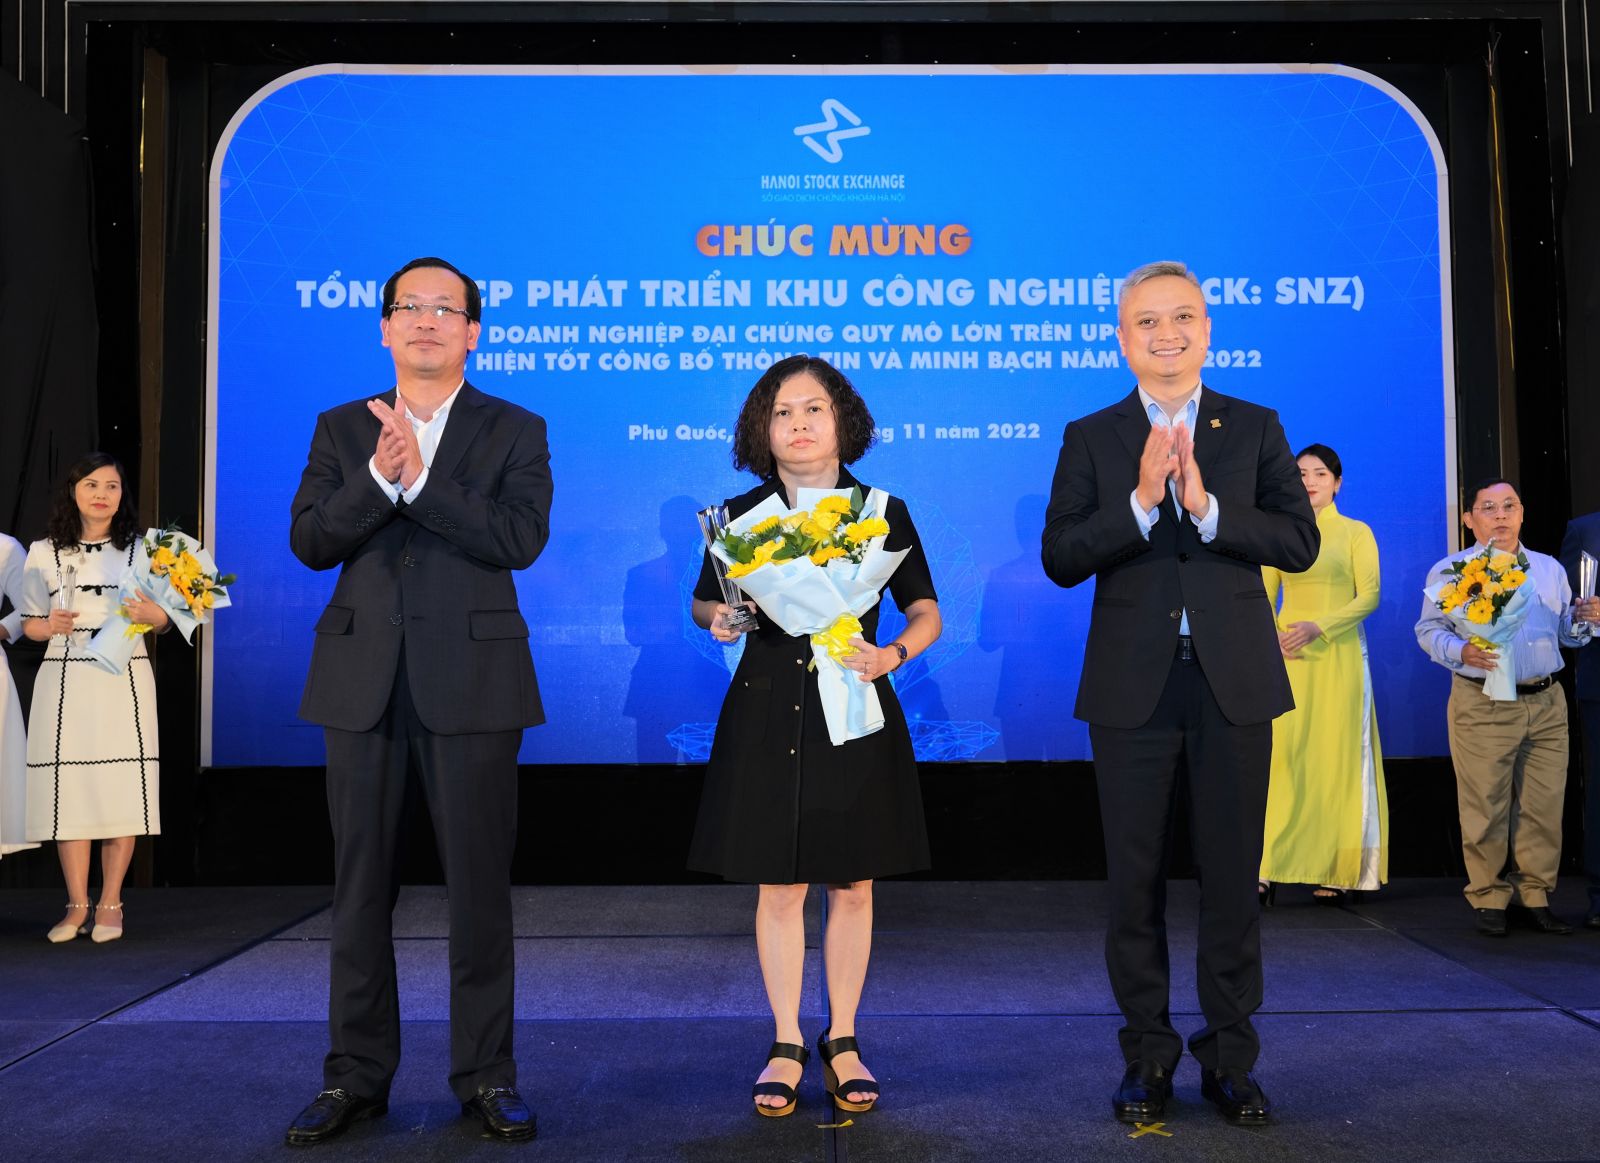 Bà Nguyễn Thị Hạnh - Phó Tổng Giám đốc SNZ nhận cúp Doanh nghiệp đại chúng quy mô lớn trên UPCoM thực hiện tốt công bố thông tin và minh bạch năm 2021 - 2022